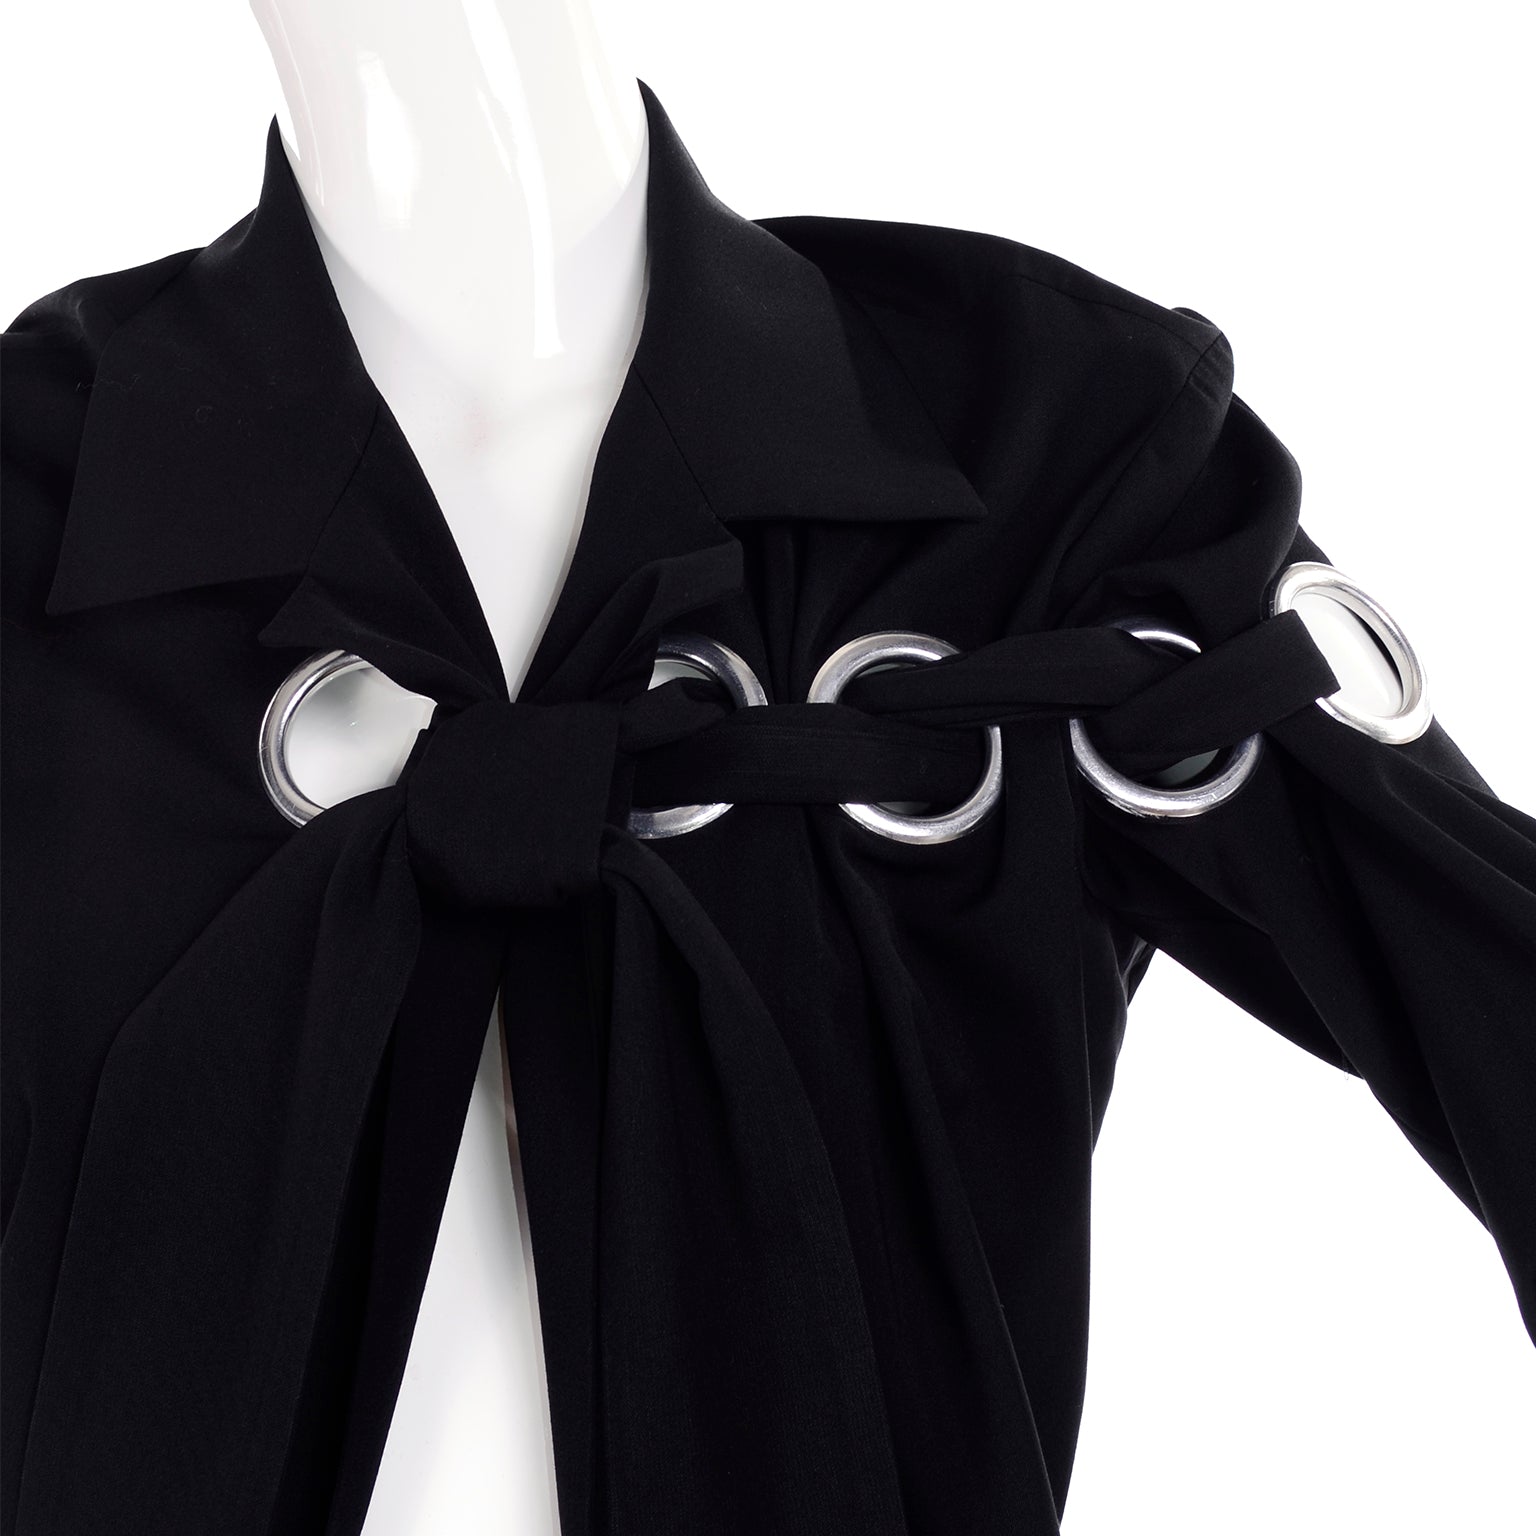 S/S 2004 Yohji Yamamoto Avant Garde Black Skirt & Jacket W/ Tied Grommets